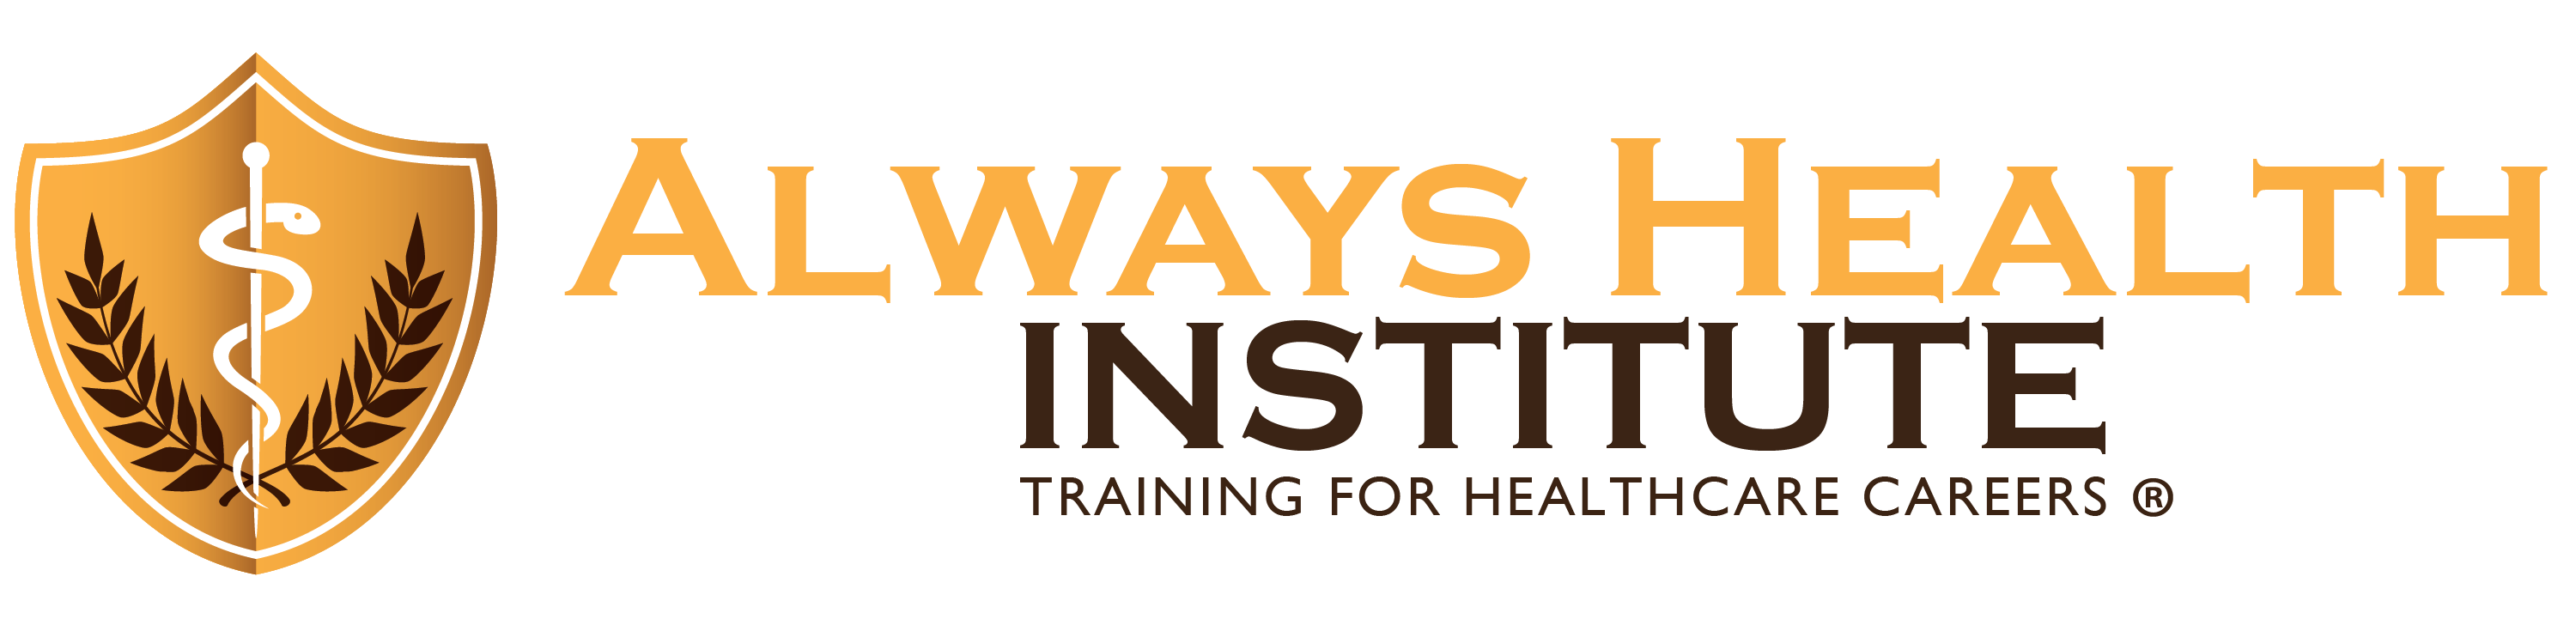 Always Health Institute